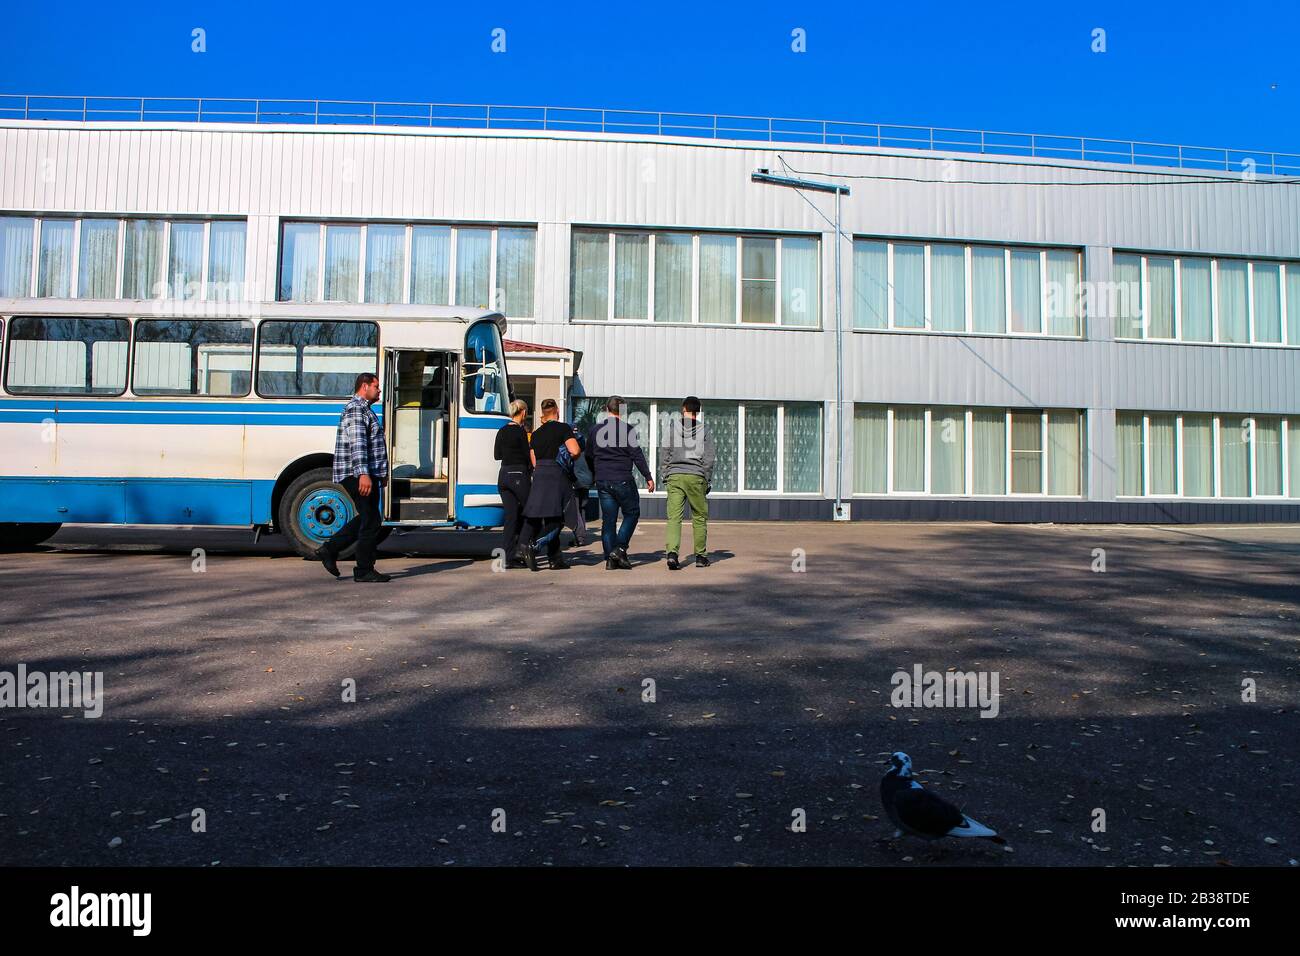 Eine dunkle Tourismustournee Gruppe verlässt einen altmodischen bus der sowjetischen Ära, um in die Kantine in der Nähe des Reaktors von Tschernobyl zu gelangen. Stockfoto